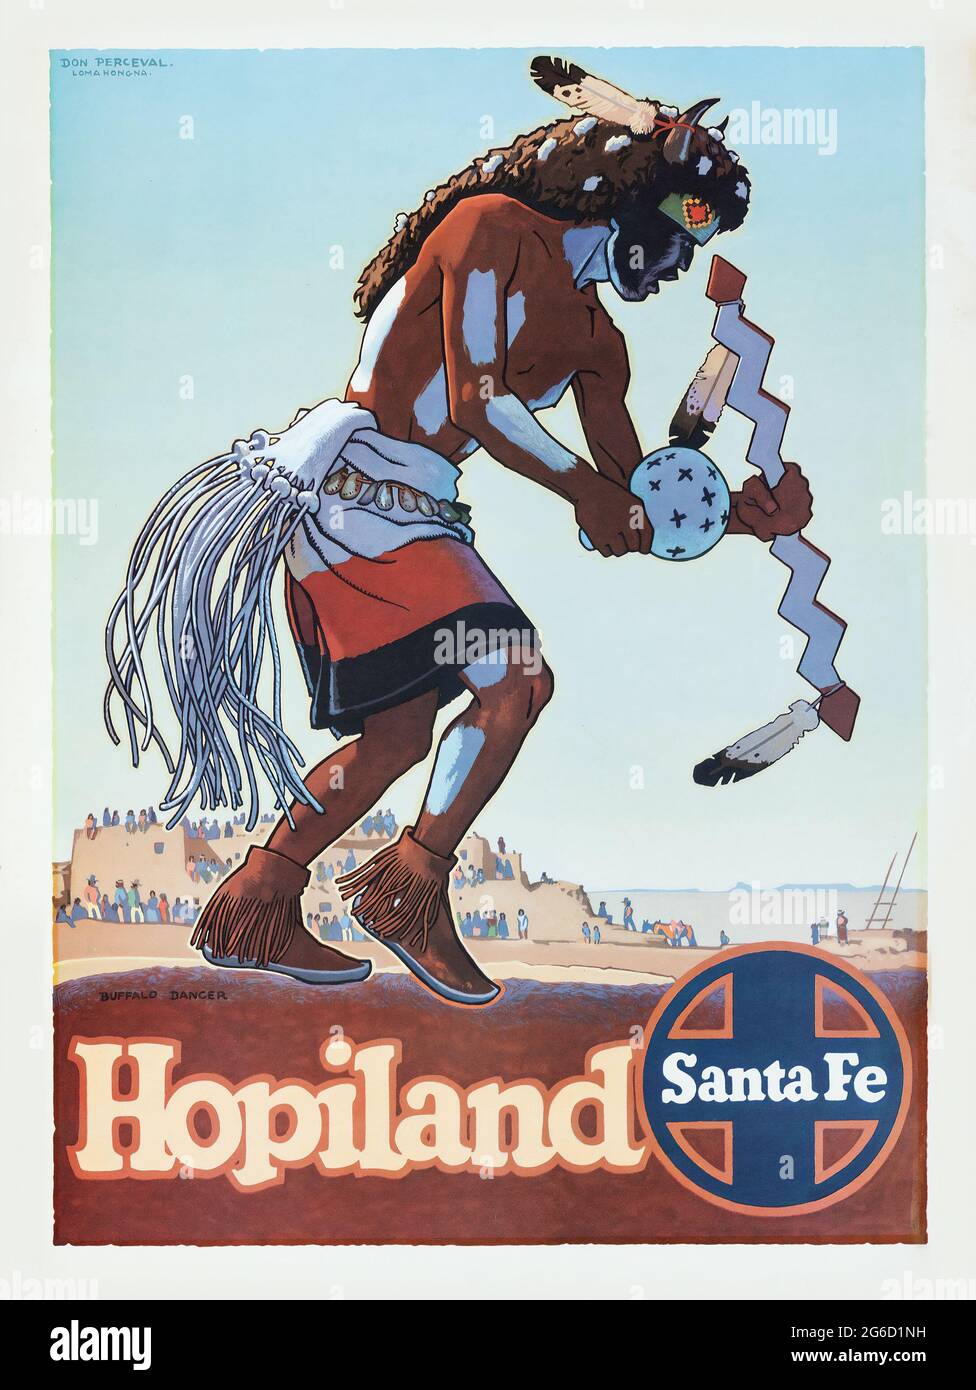 AFFICHE DE VOYAGE Santa Fe Railway (Atchison, Topeka et Santa Fe Railway, c. 1949) artiste: Don Perceval. Un rituel d'homme de médecine. La tribu Hopi. Banque D'Images